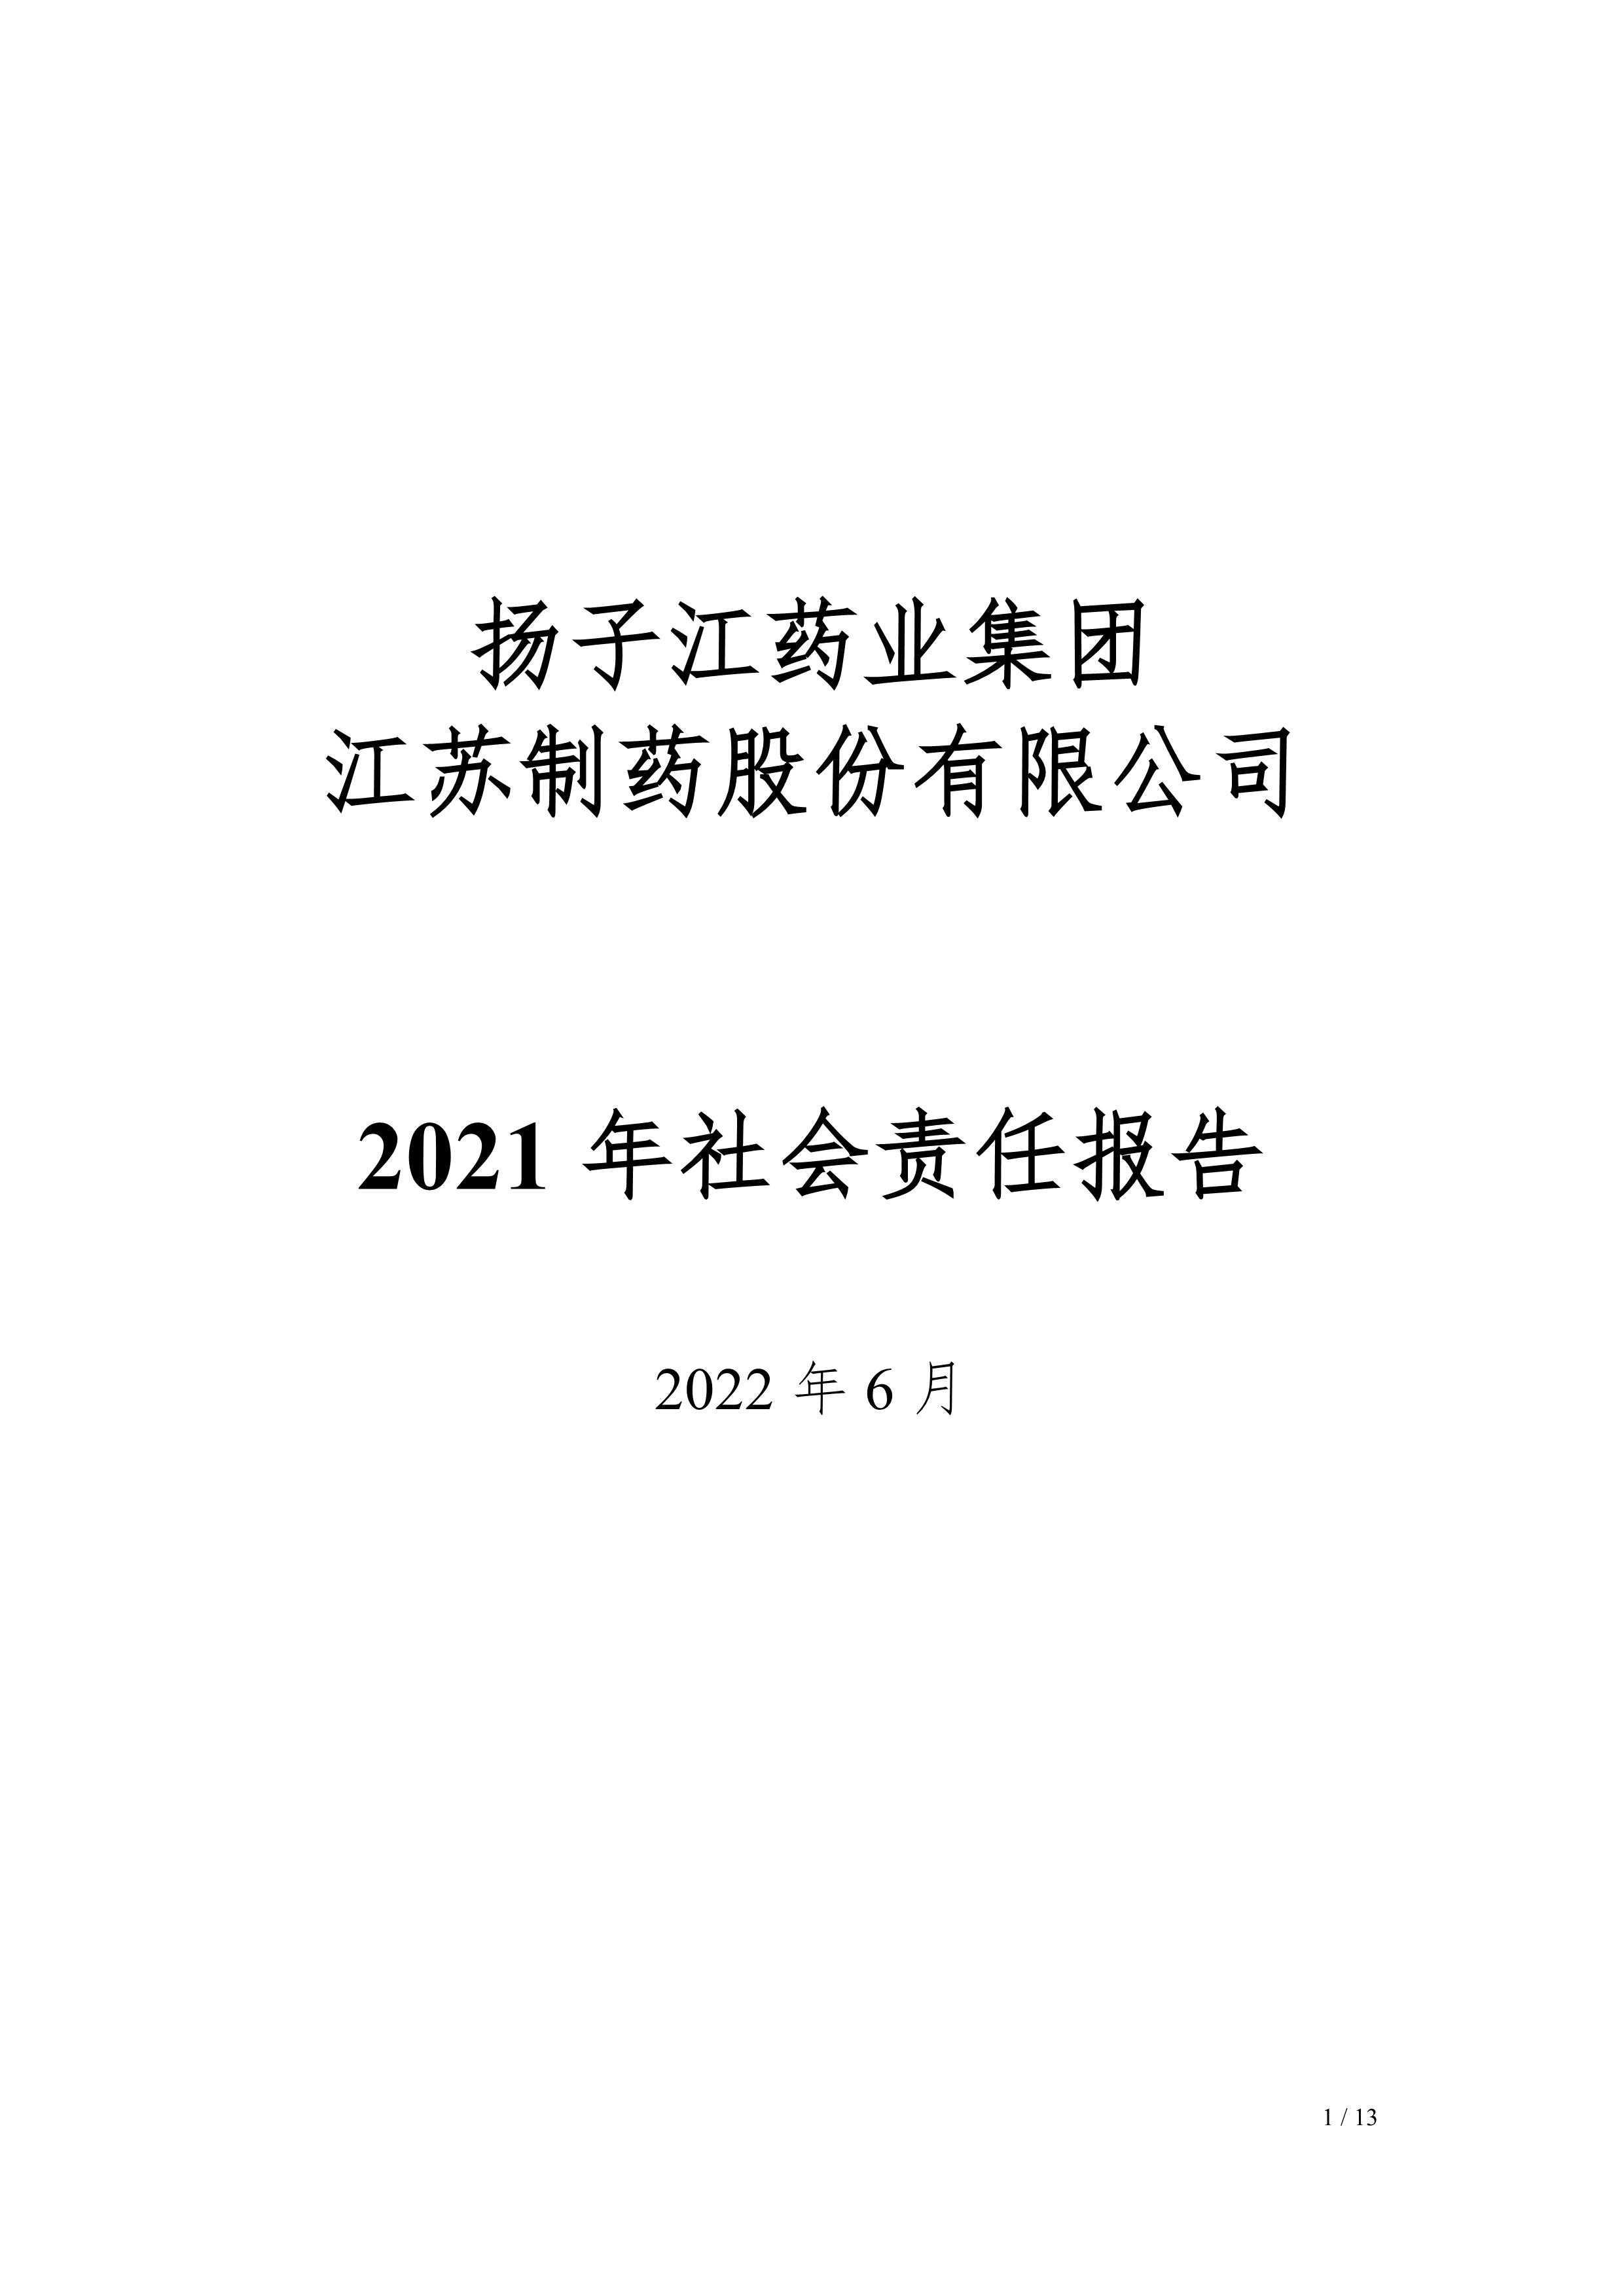 江蘇制藥股份有限公司2021年社會責任報告公示